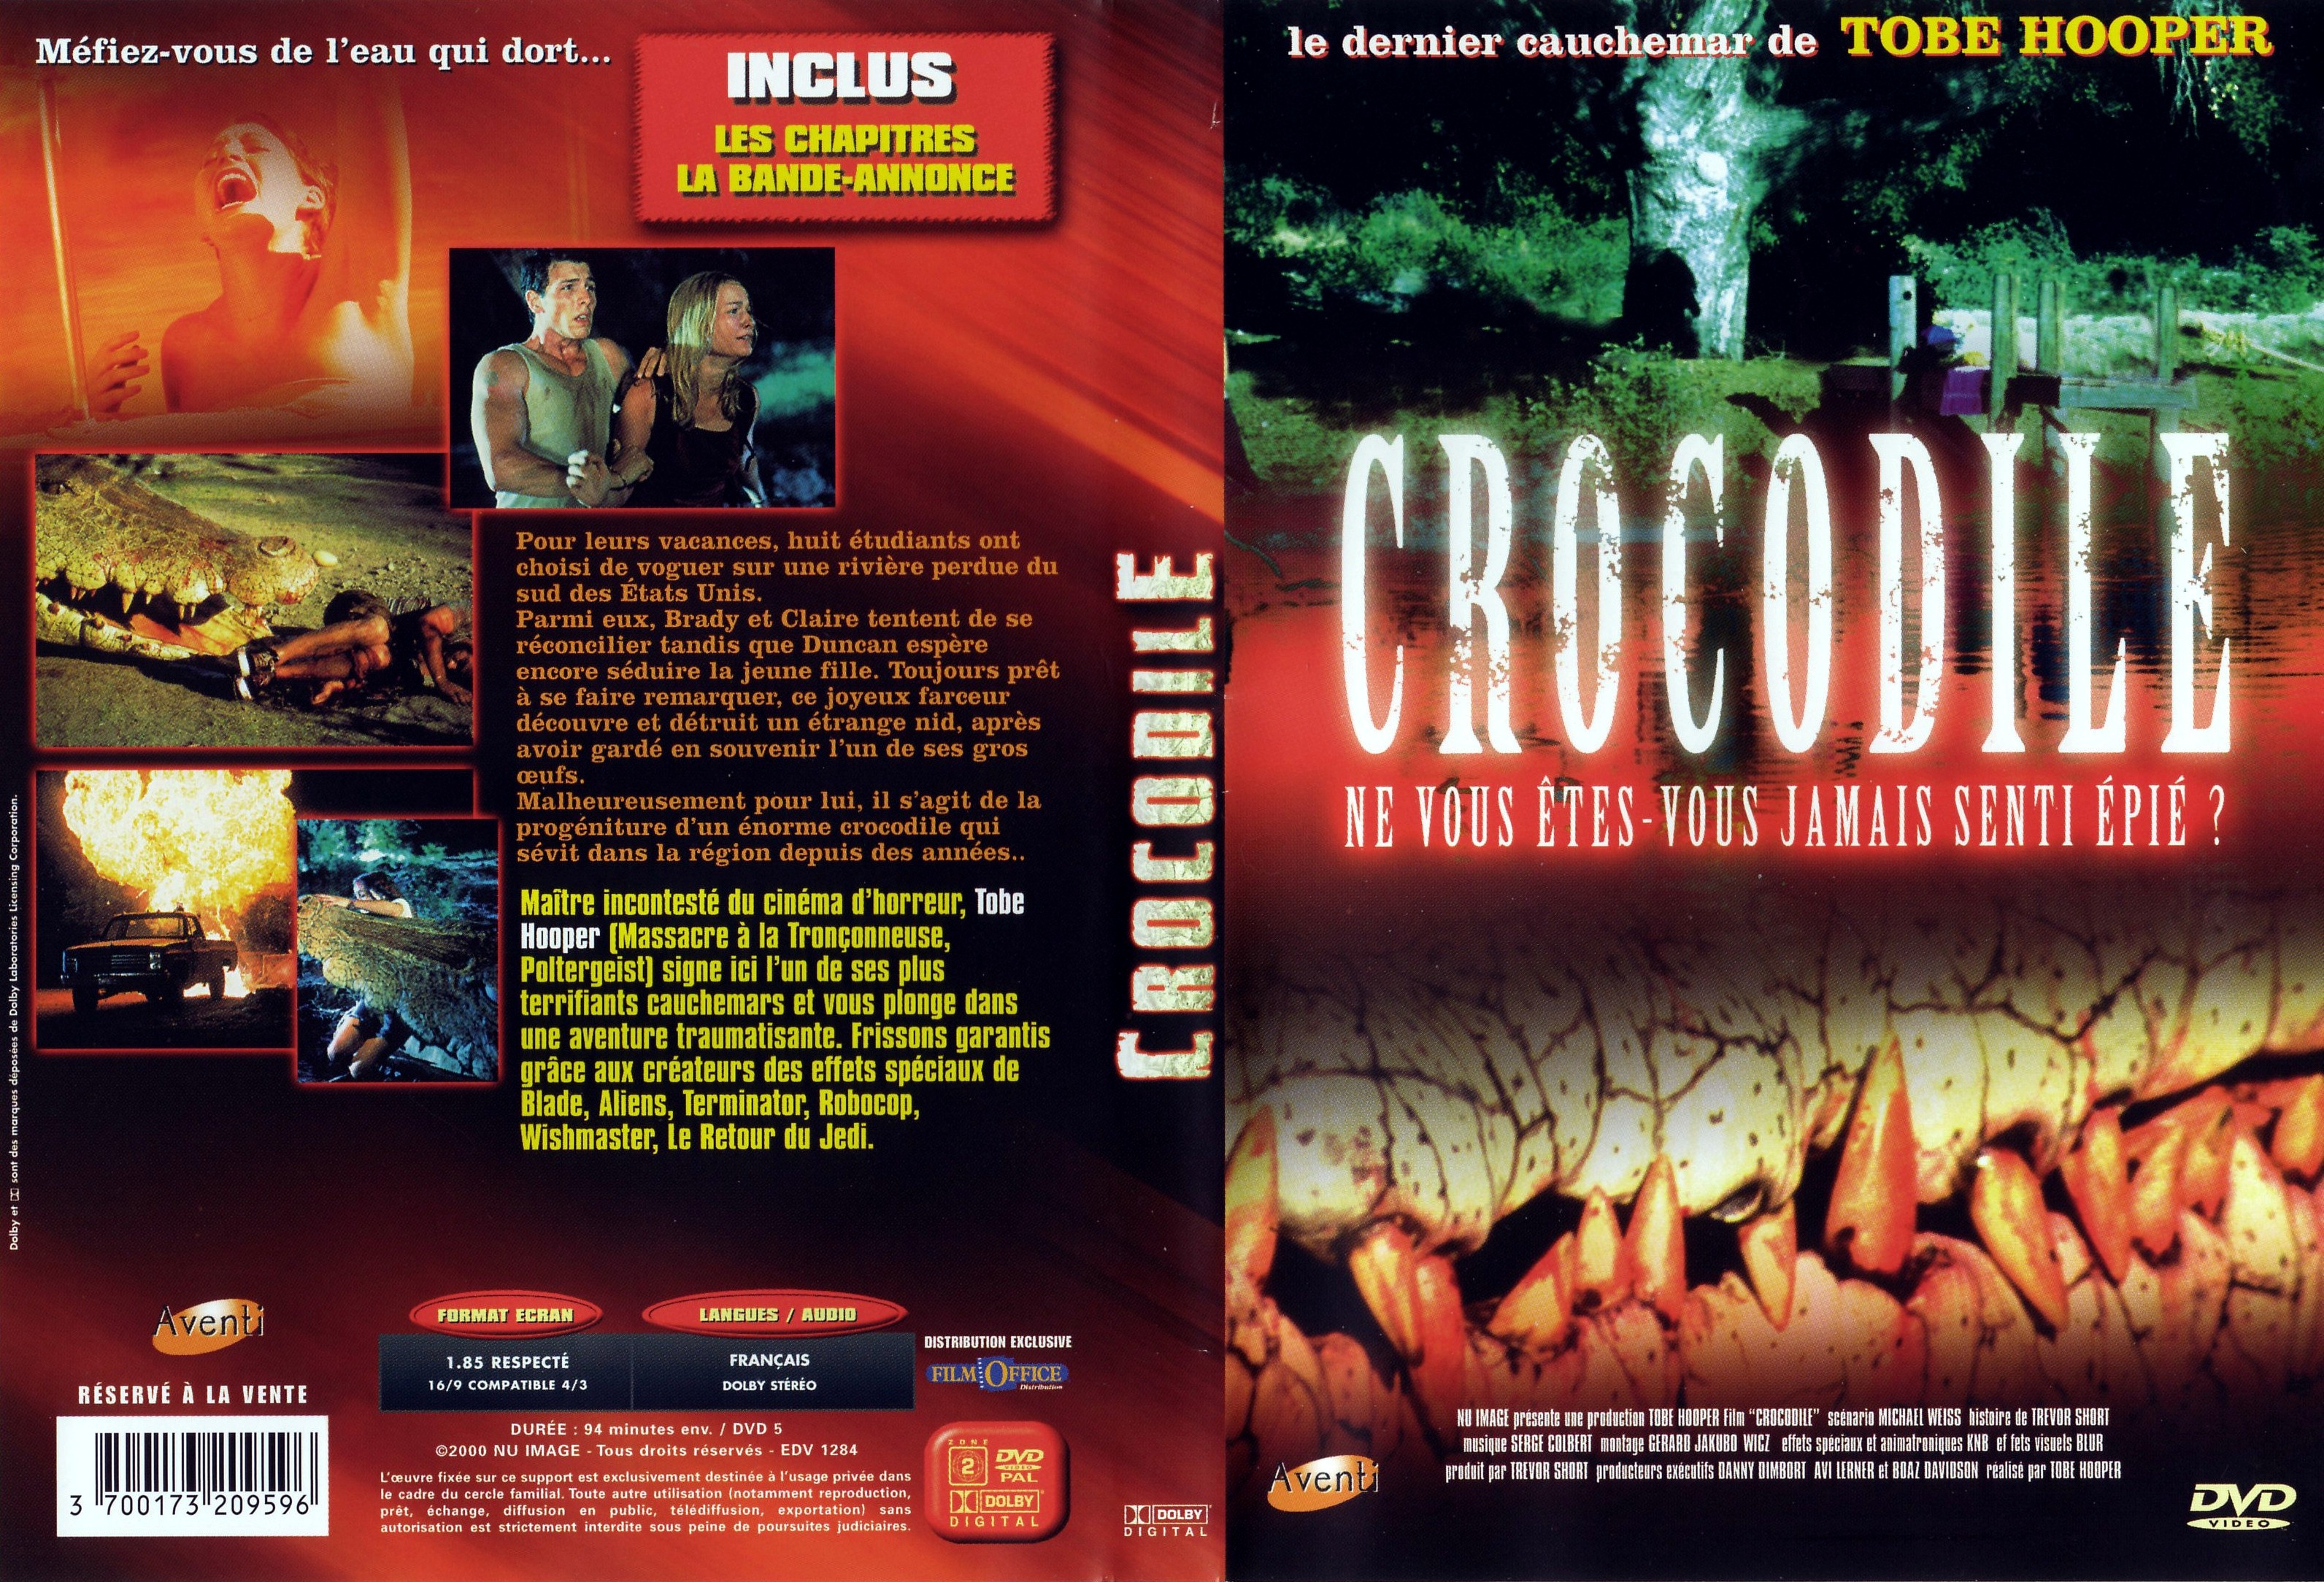 Jaquette DVD Crocodile v2